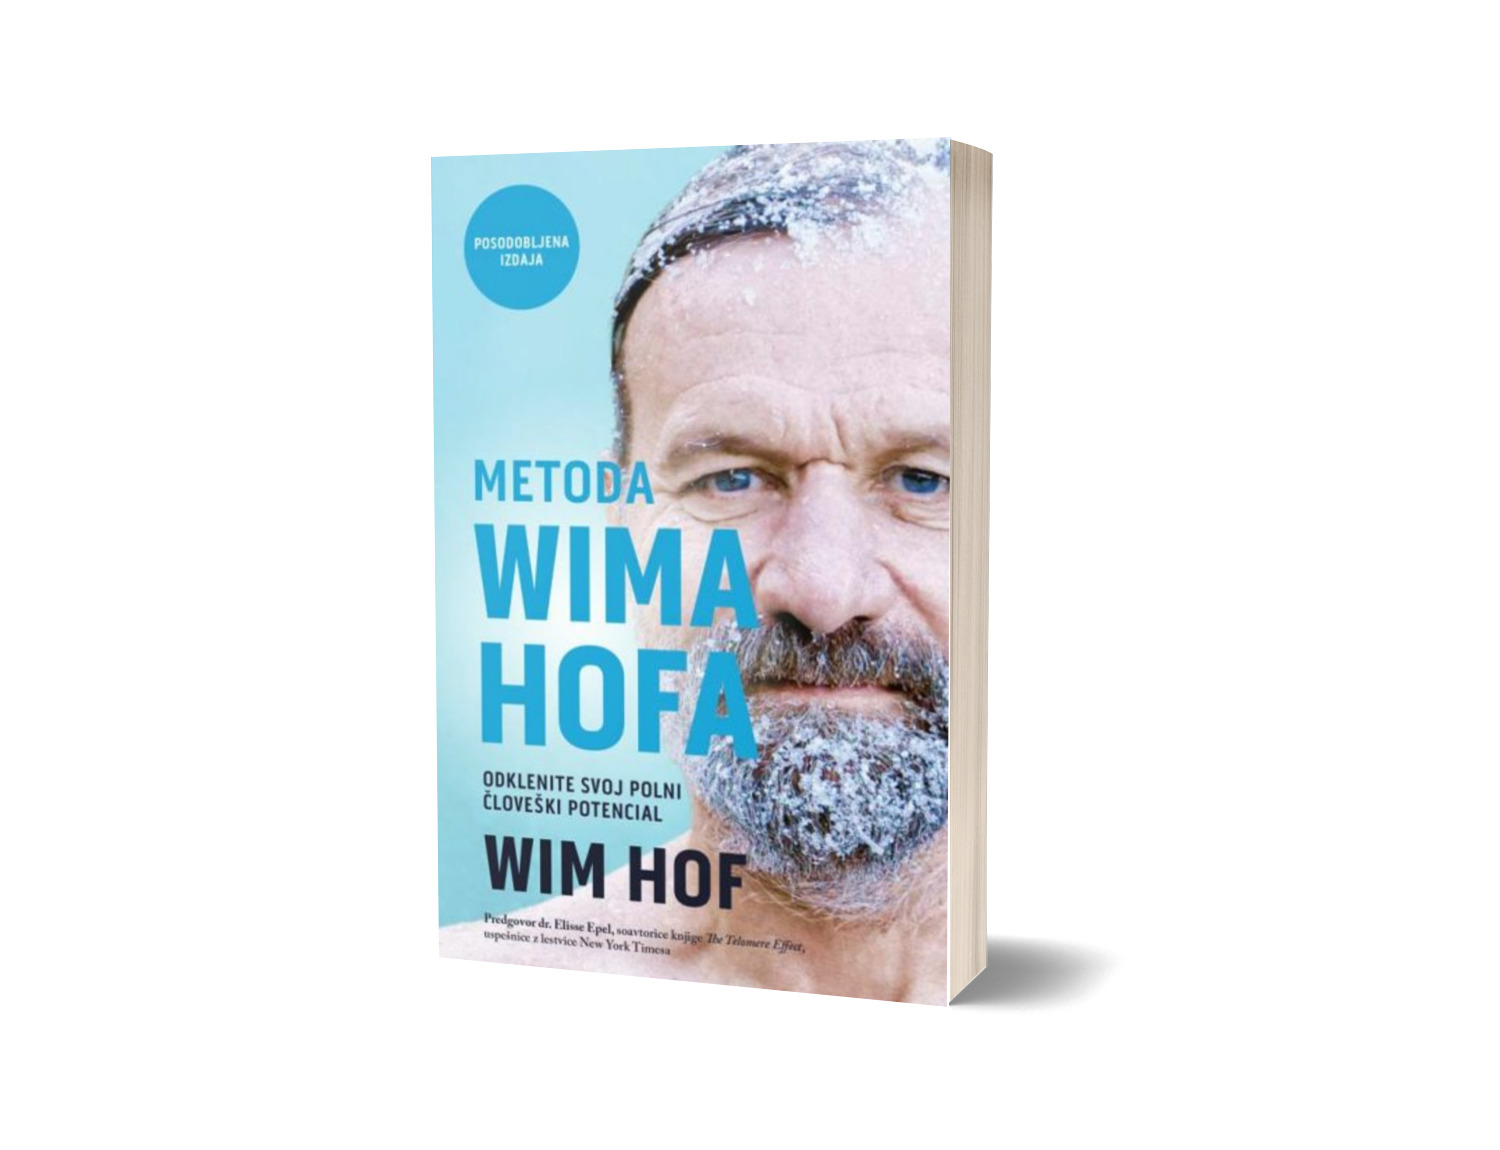 Metoda Wima Hofa – odklenite svoj polni človeški potencial